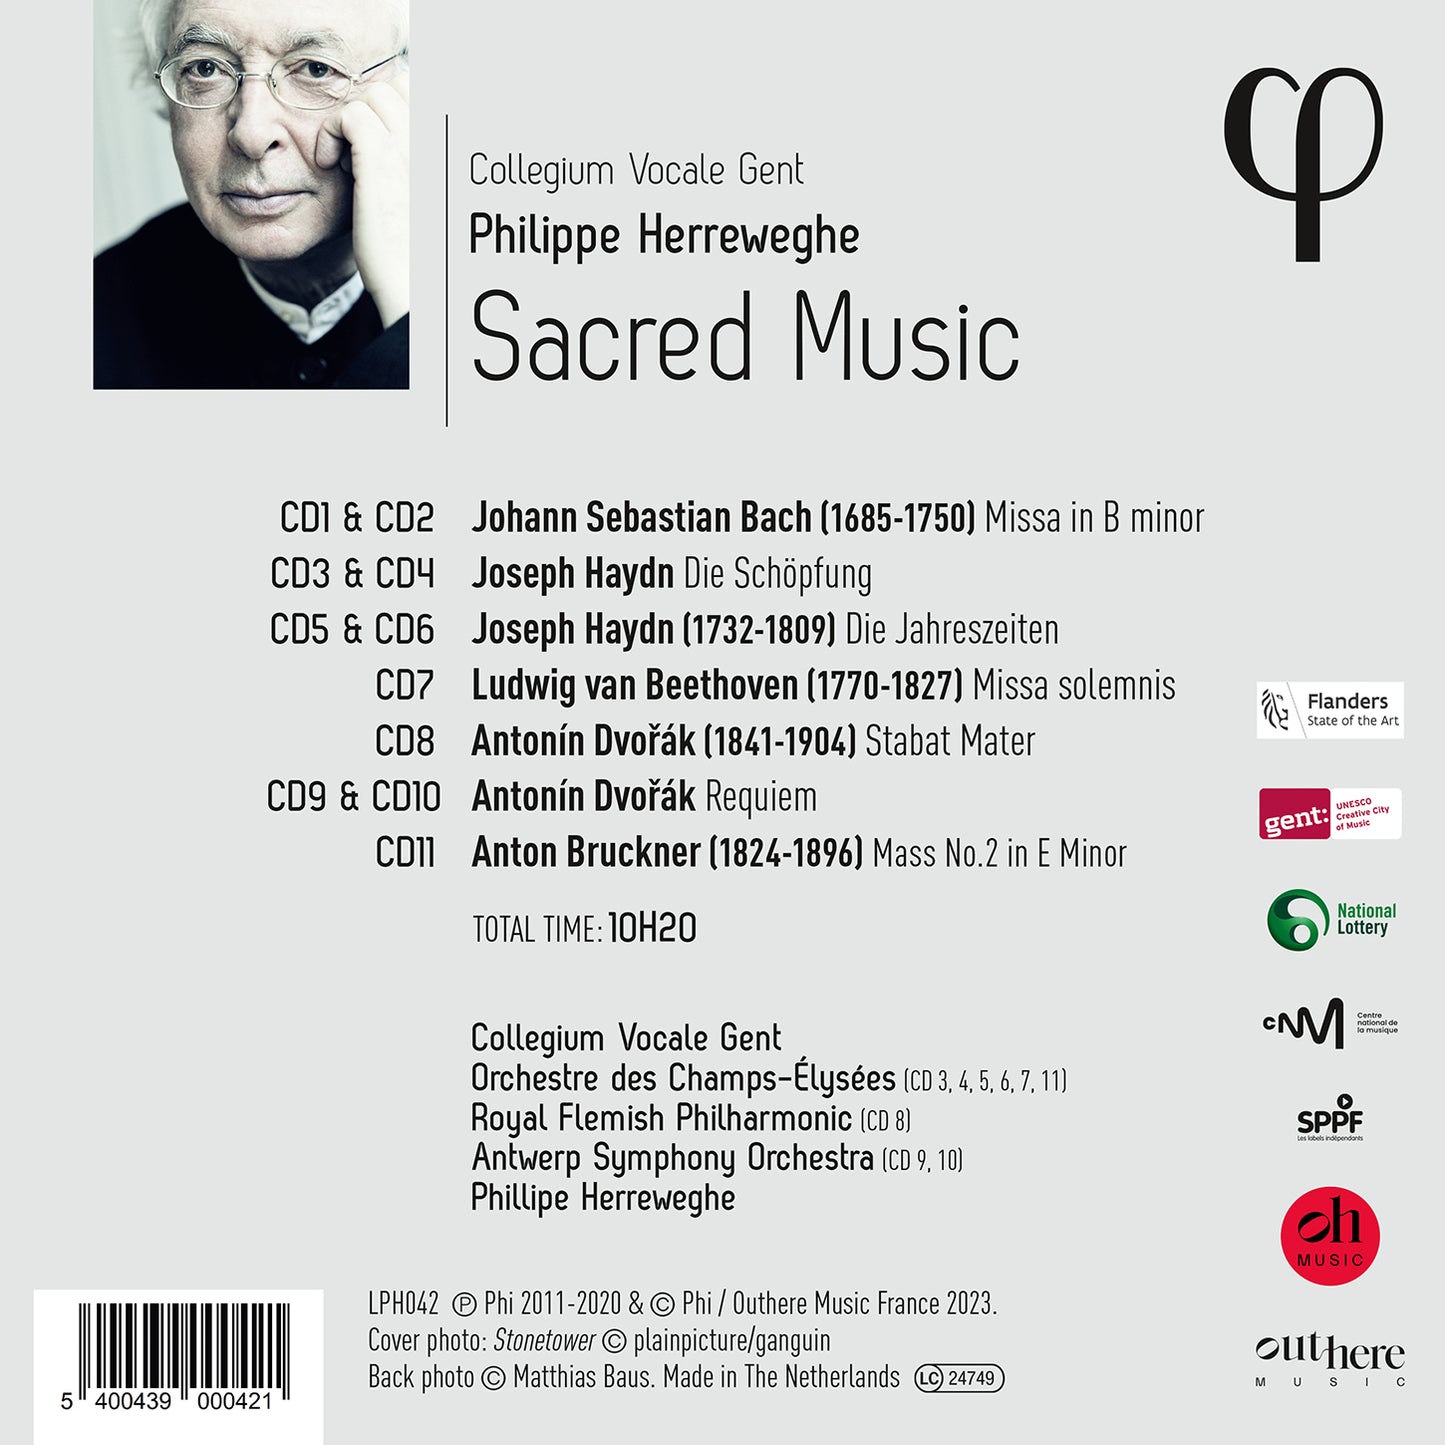 Sacred Music / Collegium Vocale Gent; Philippe Herreweghe [11 CDs]